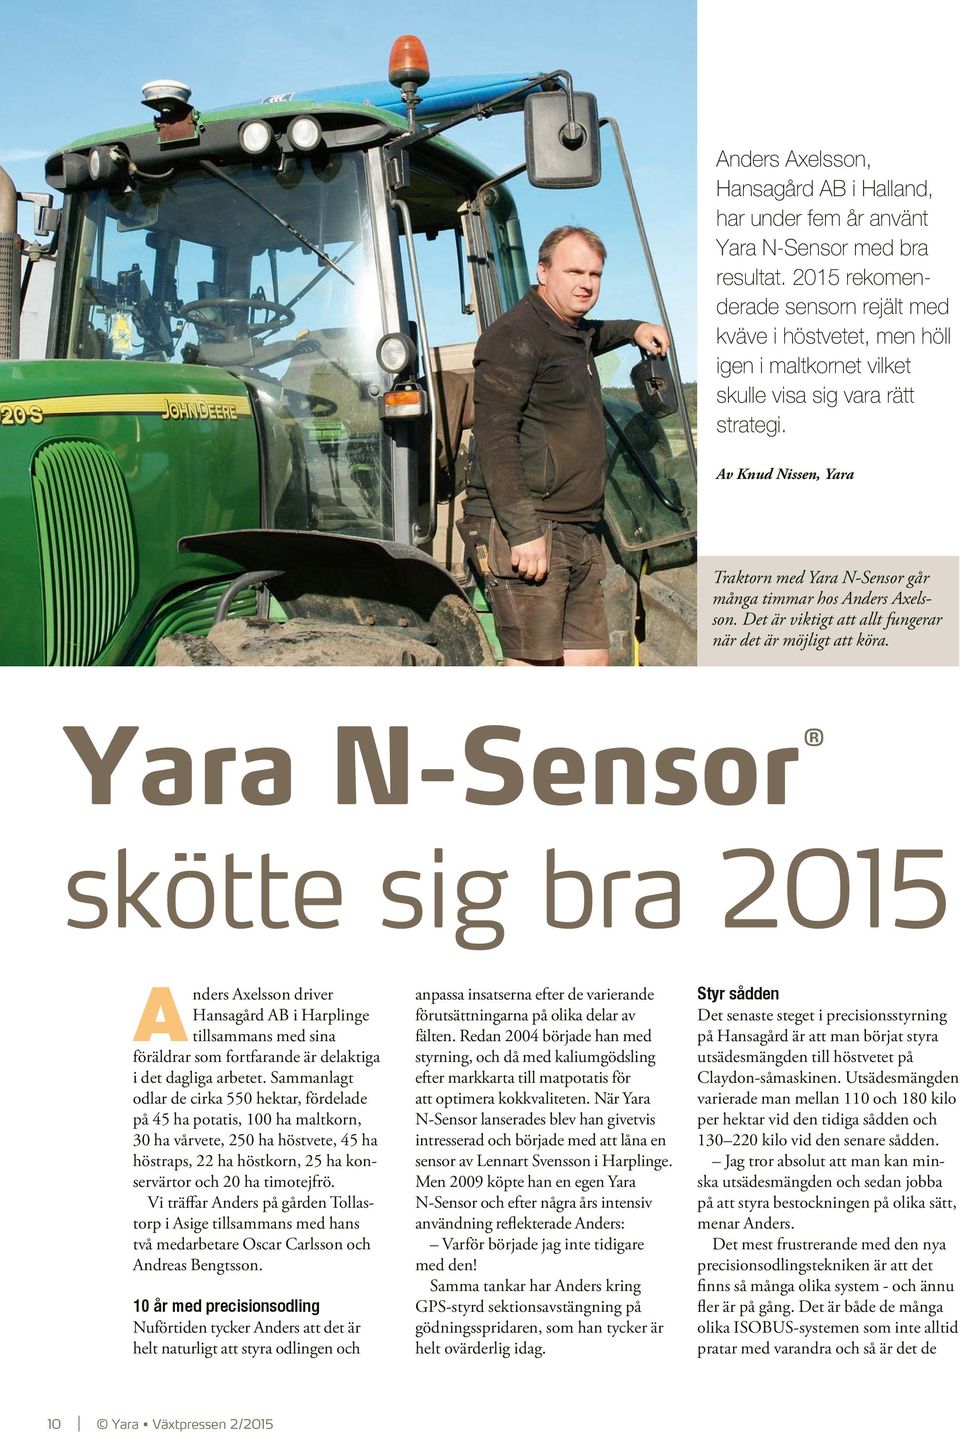 Av Knud Nissen, Yara Traktorn med Yara N-Sensor går många timmar hos Anders Axelsson. Det är viktigt att allt fungerar när det är möjligt att köra.